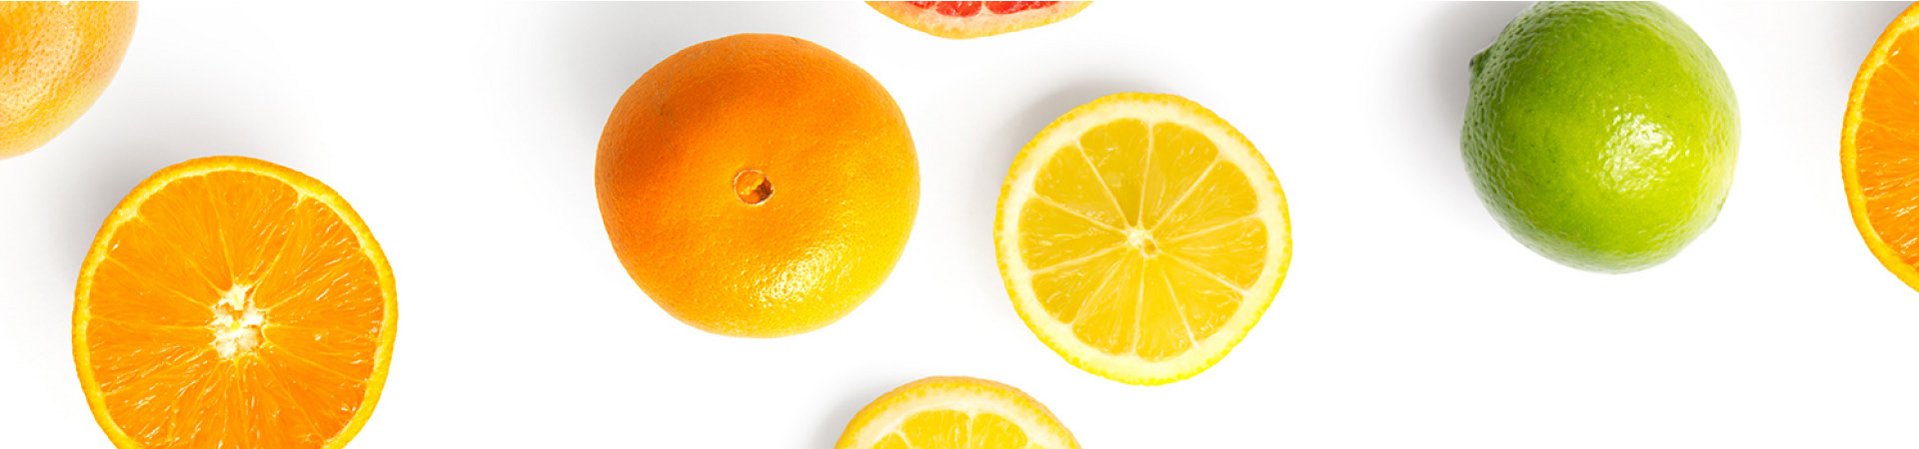 Orangen, Zitronen und Limetten auf weißem Hintergrund